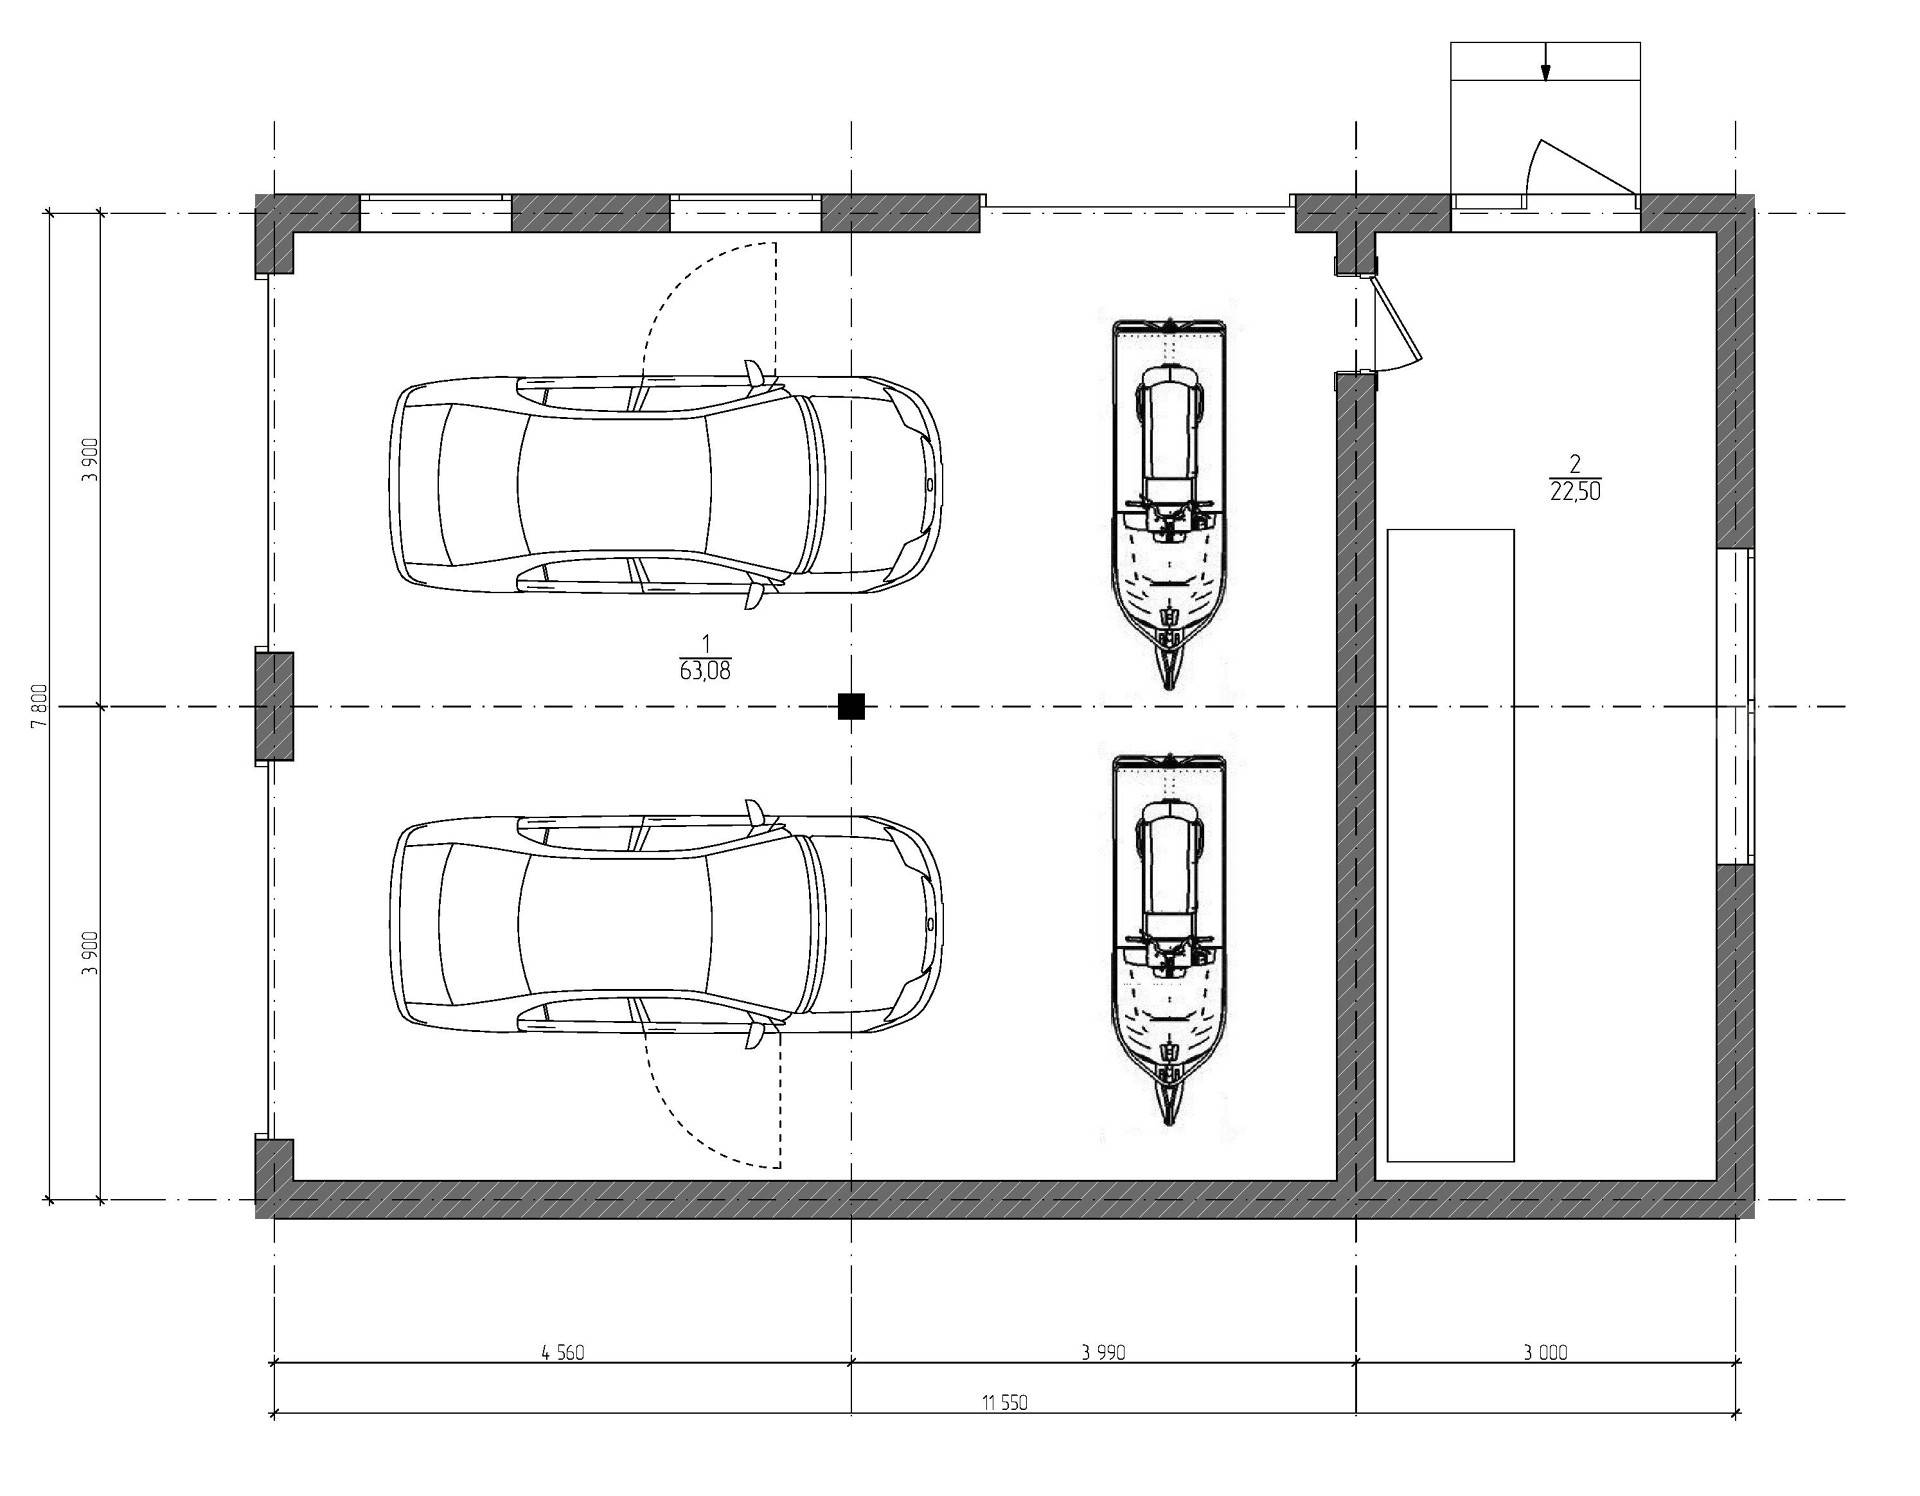 Стандартные размеры гаража для легкового автомобиля и технический план гаража